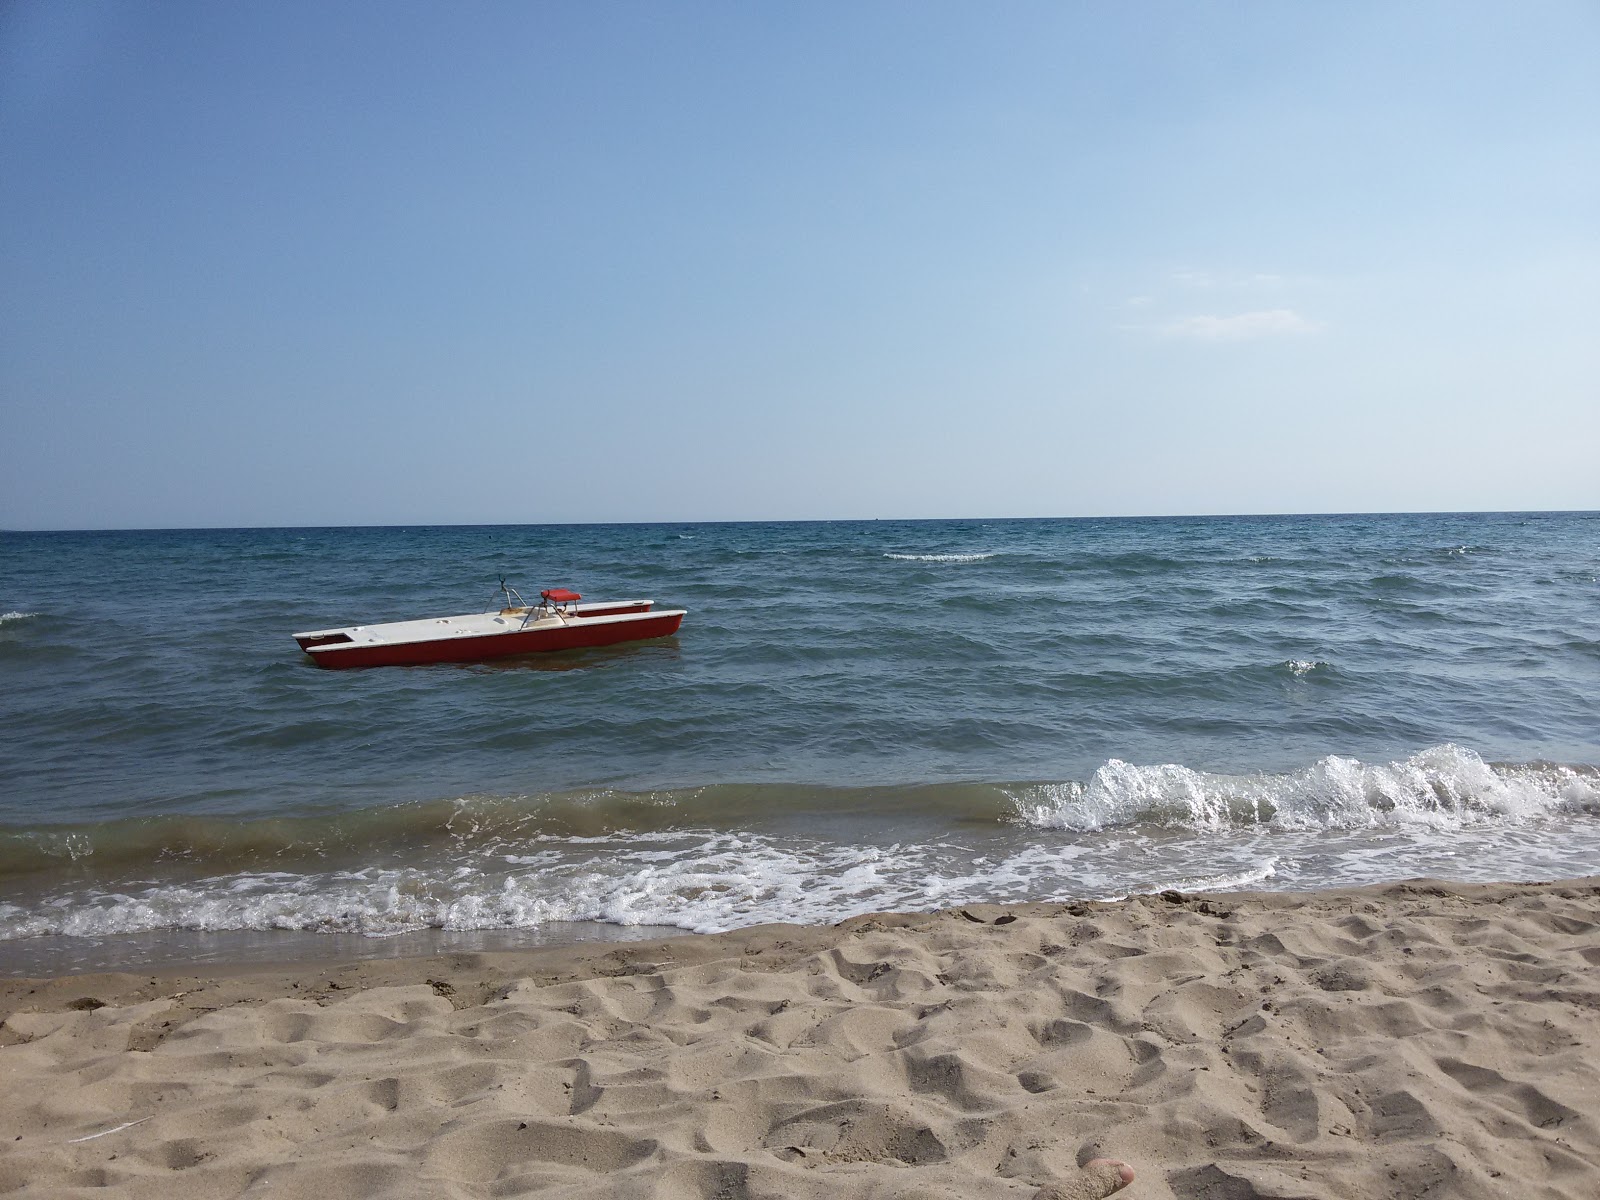 Foto de Spiaggia di Verde Mare - lugar popular entre los conocedores del relax